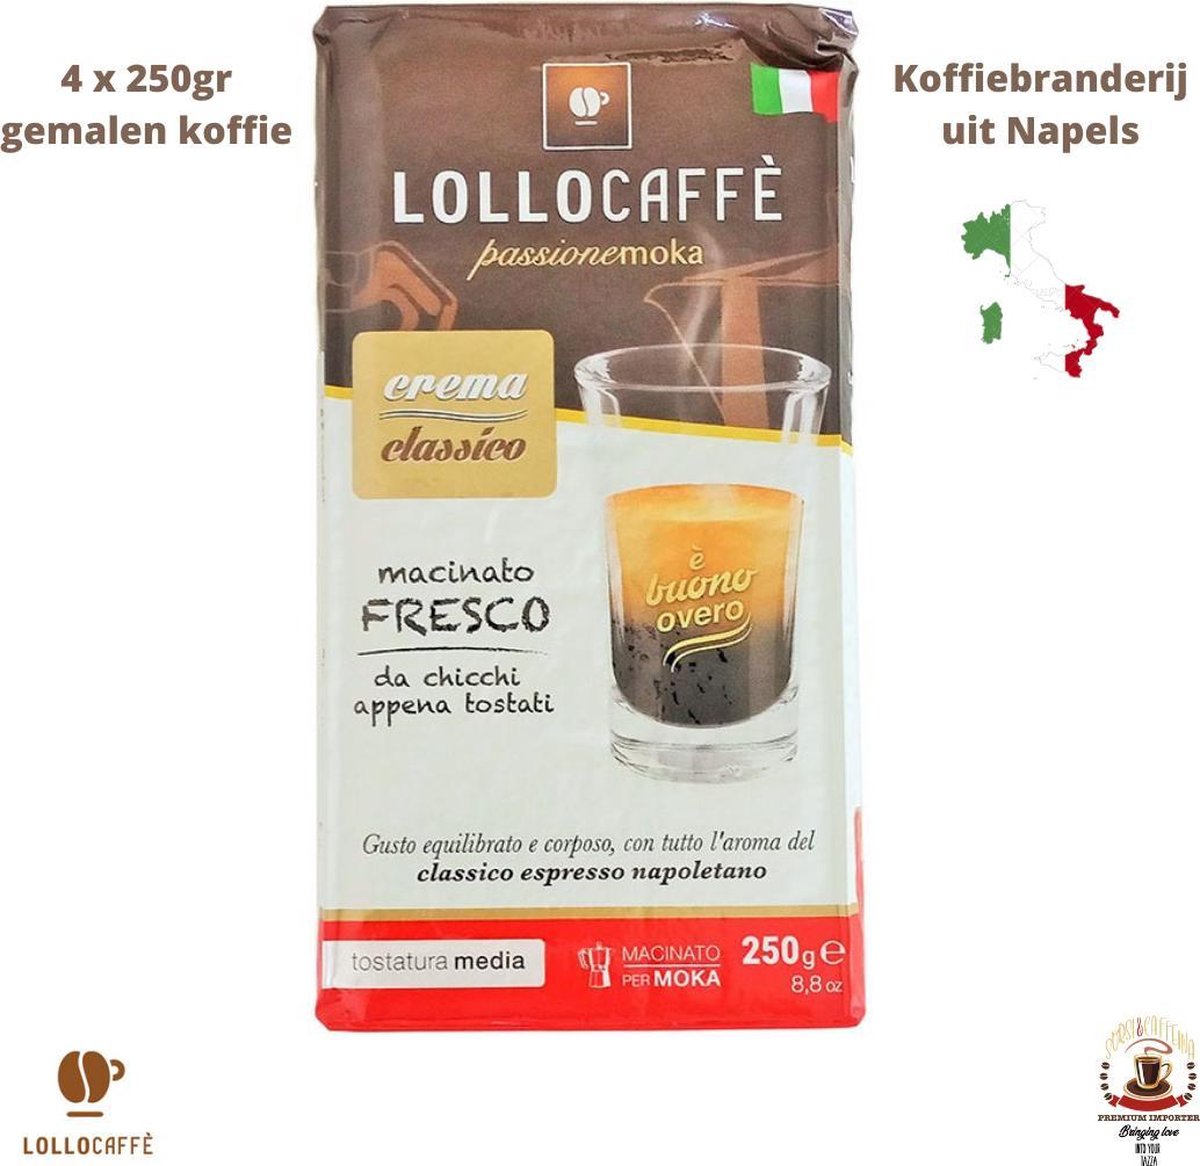 Lollo Caffè Classico - Gemalen koffie uit Napels - 250gr - Romig en rijk - perfect voor Bialetti Moka, Filter Koffie, Moccamaster, enz.